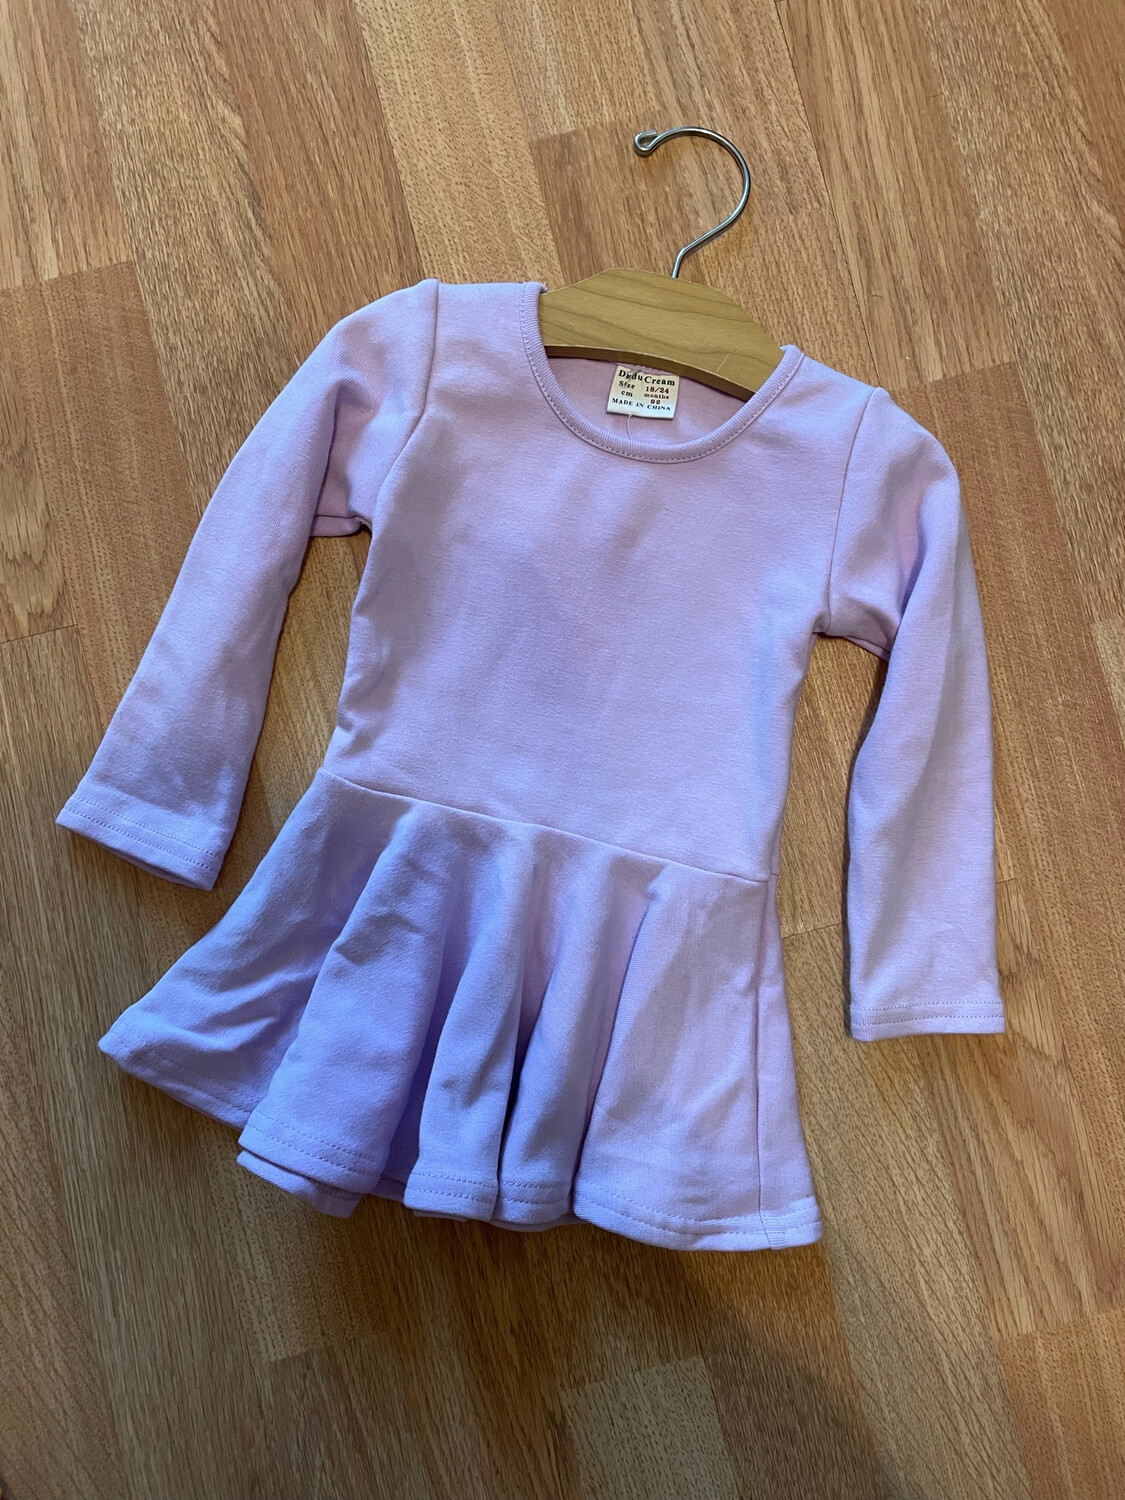 Ballerina (lavender) Dress